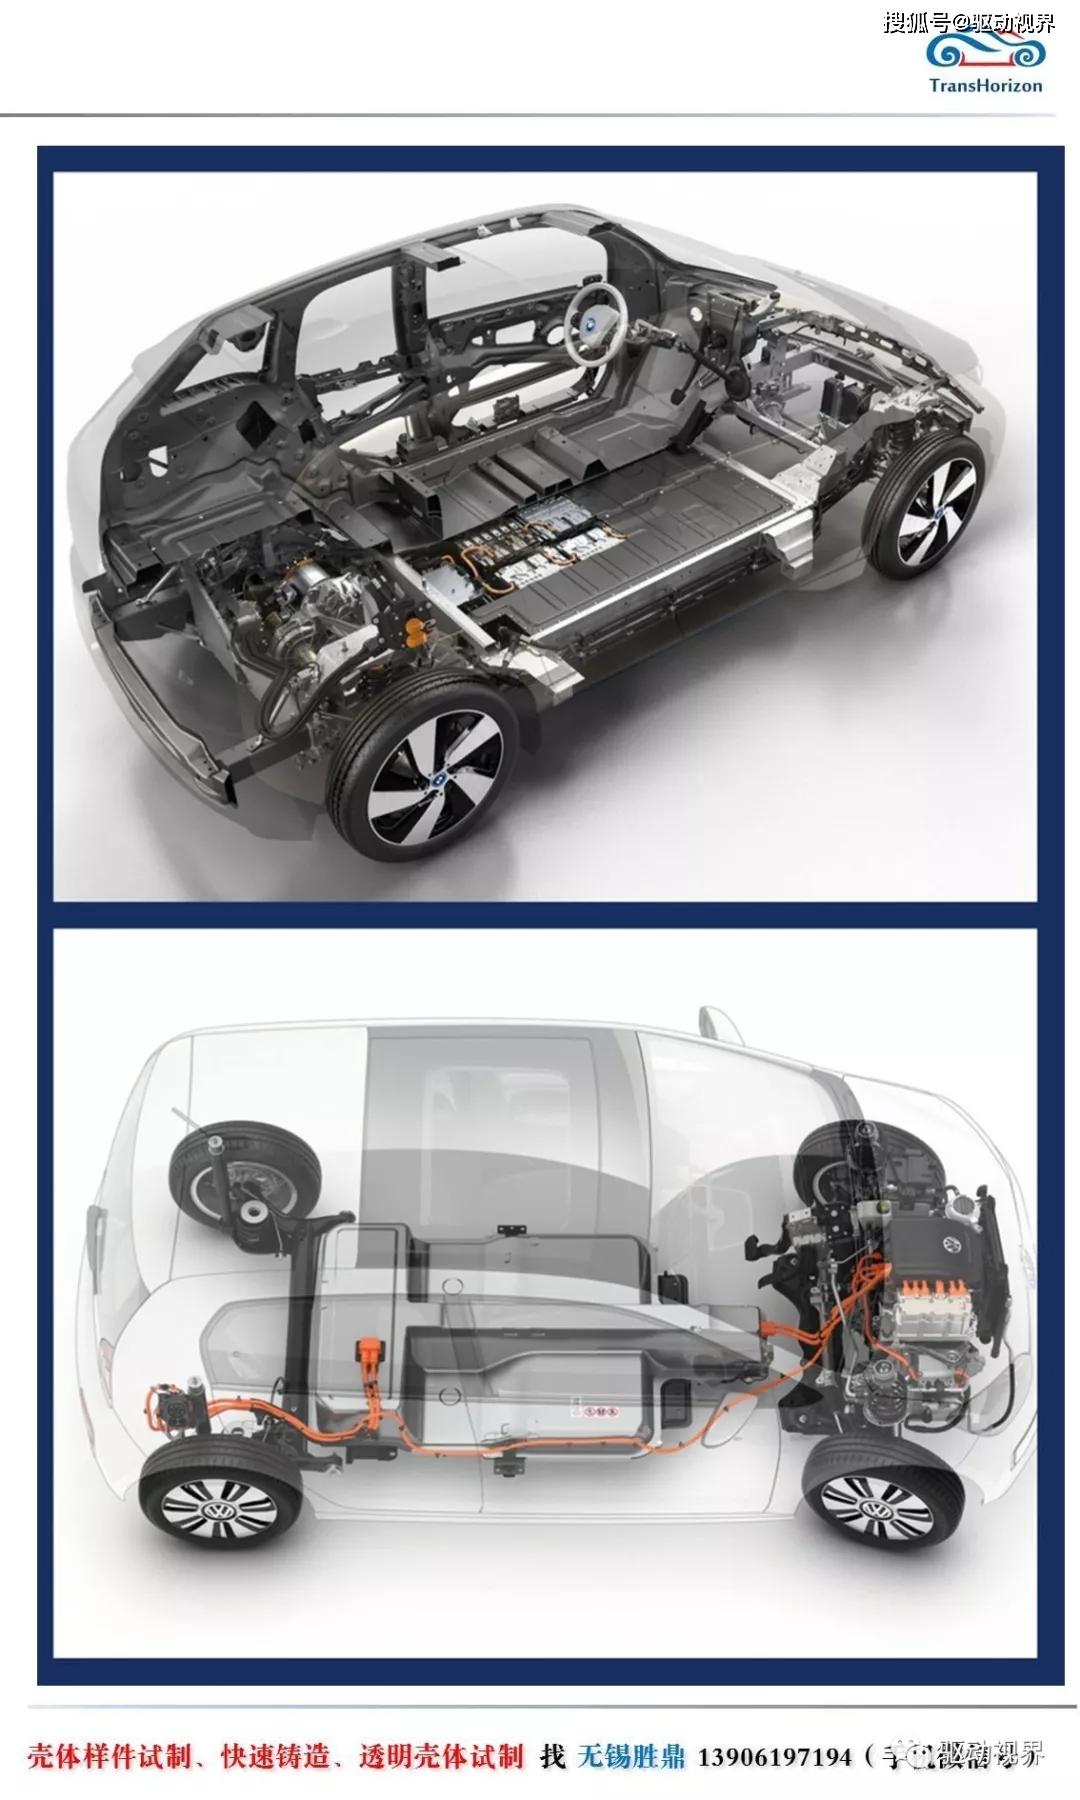 大众e-up电动汽车底盘和传动系结构和功能解析